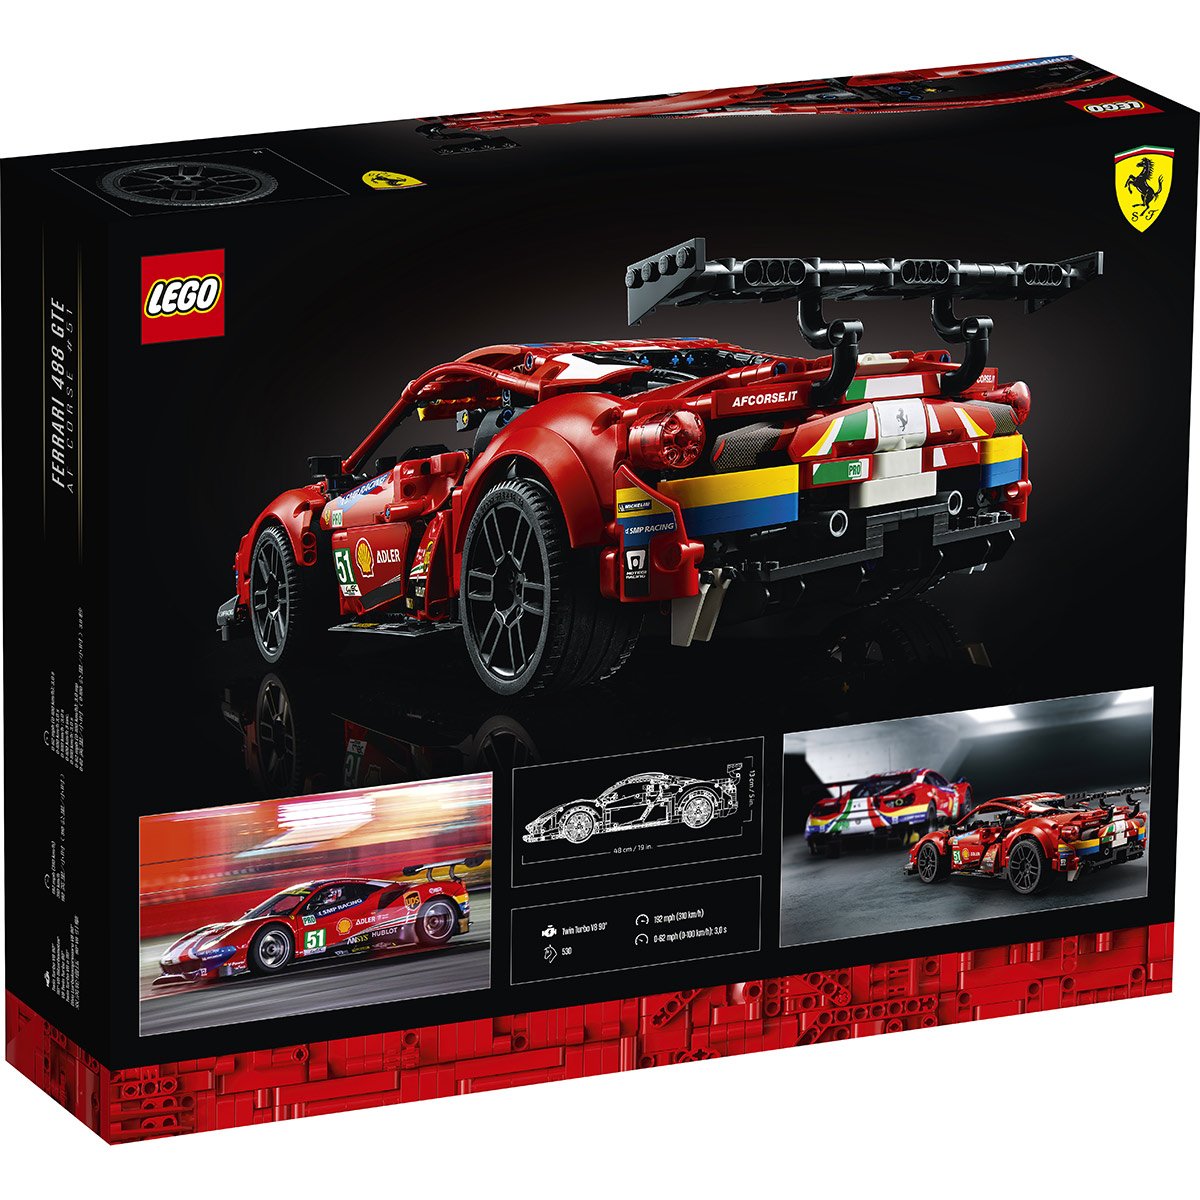 Voiture Ferrari Lego - Jeux de construction 5ans et plus